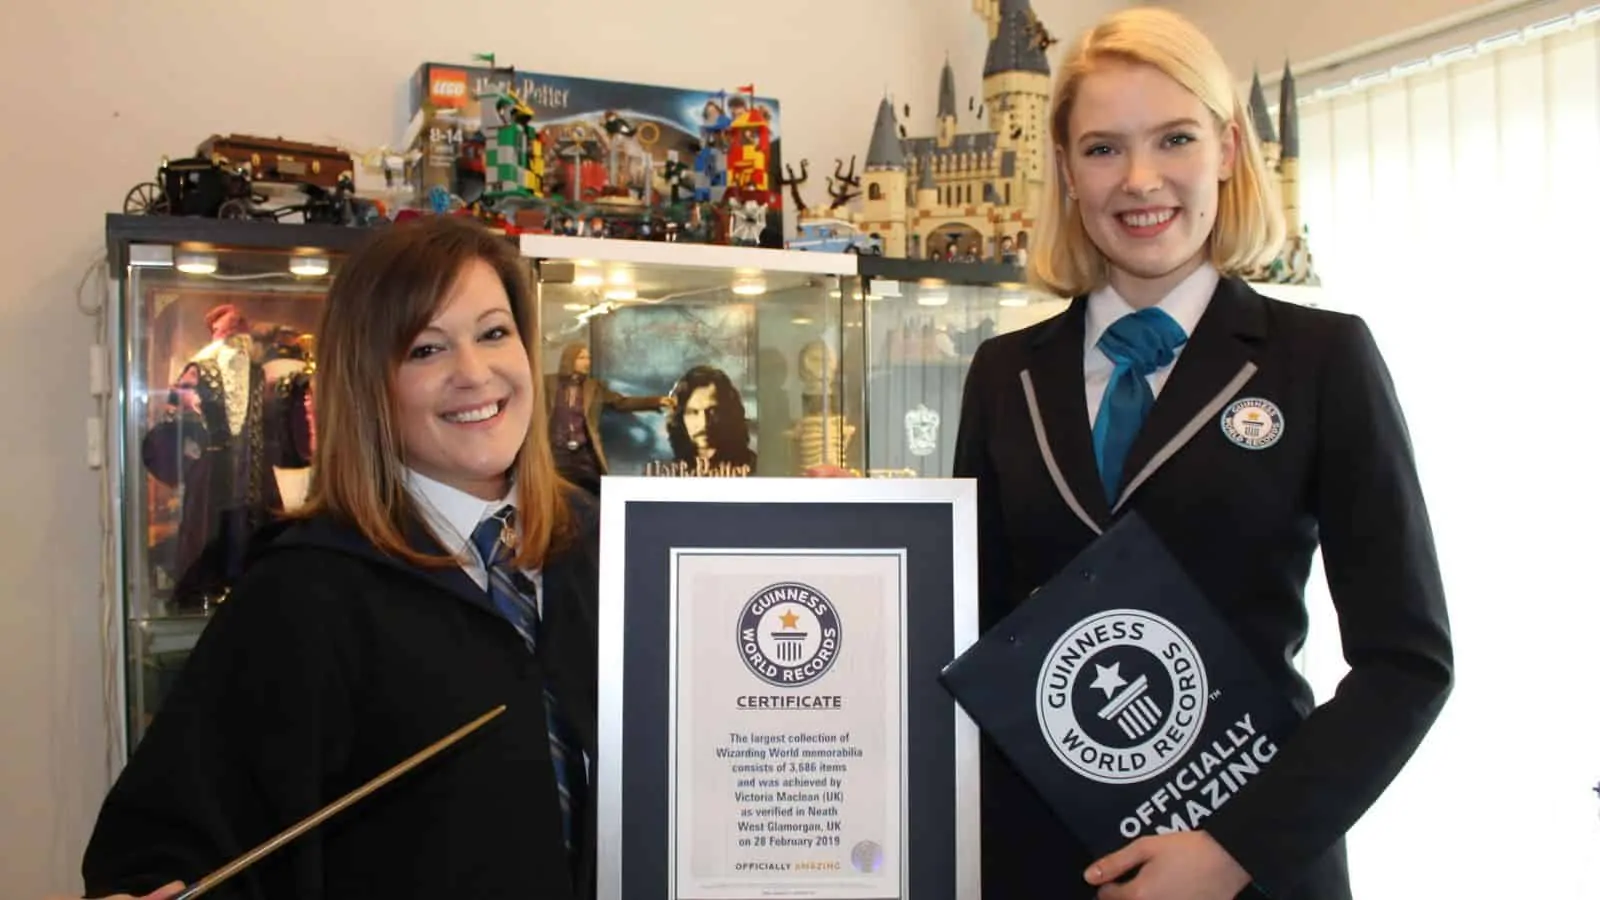 Fã bate recorde mundial com coleção de produtos oficiais de Harry Potter